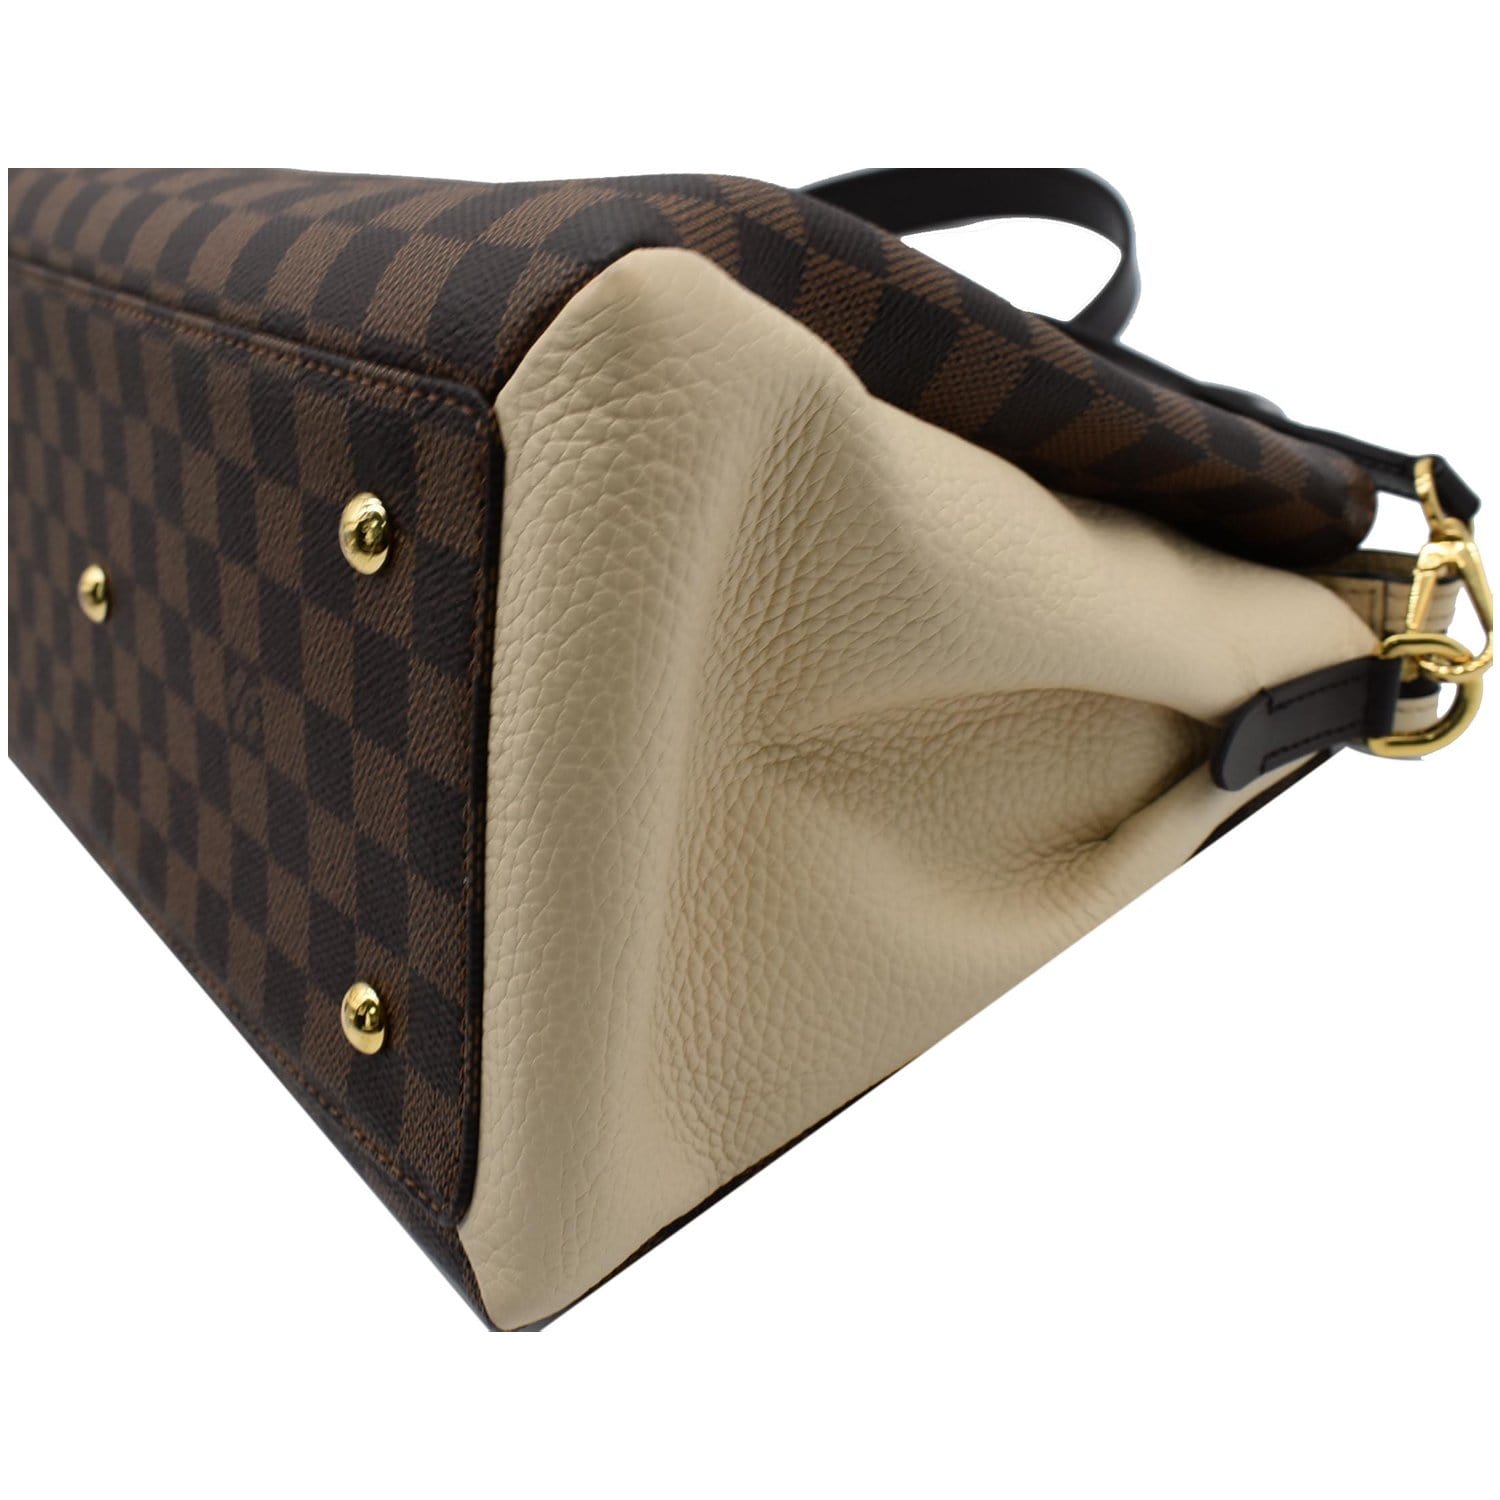 Authentic Louis Vuitton Normandy Damier Ebene shoulder bag